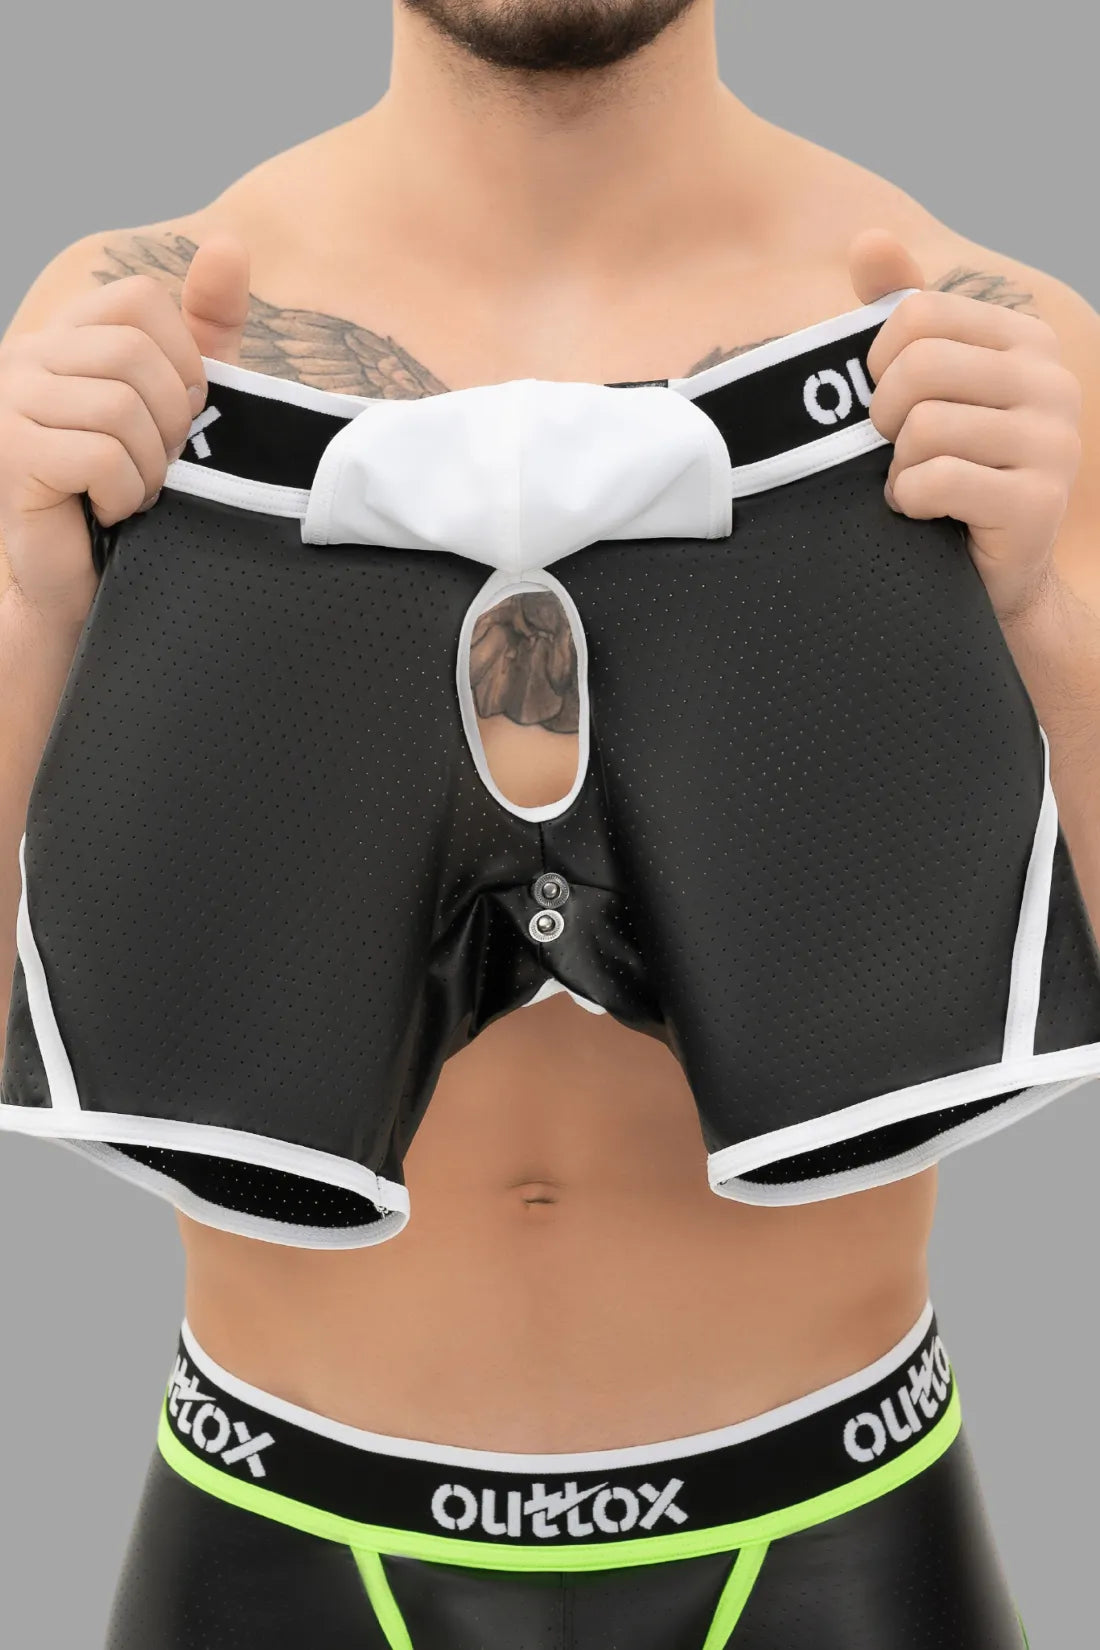 Outtox. Shorts mit offenem Rücken und Druckknopf-Codpiece. Schwarz und Weiß